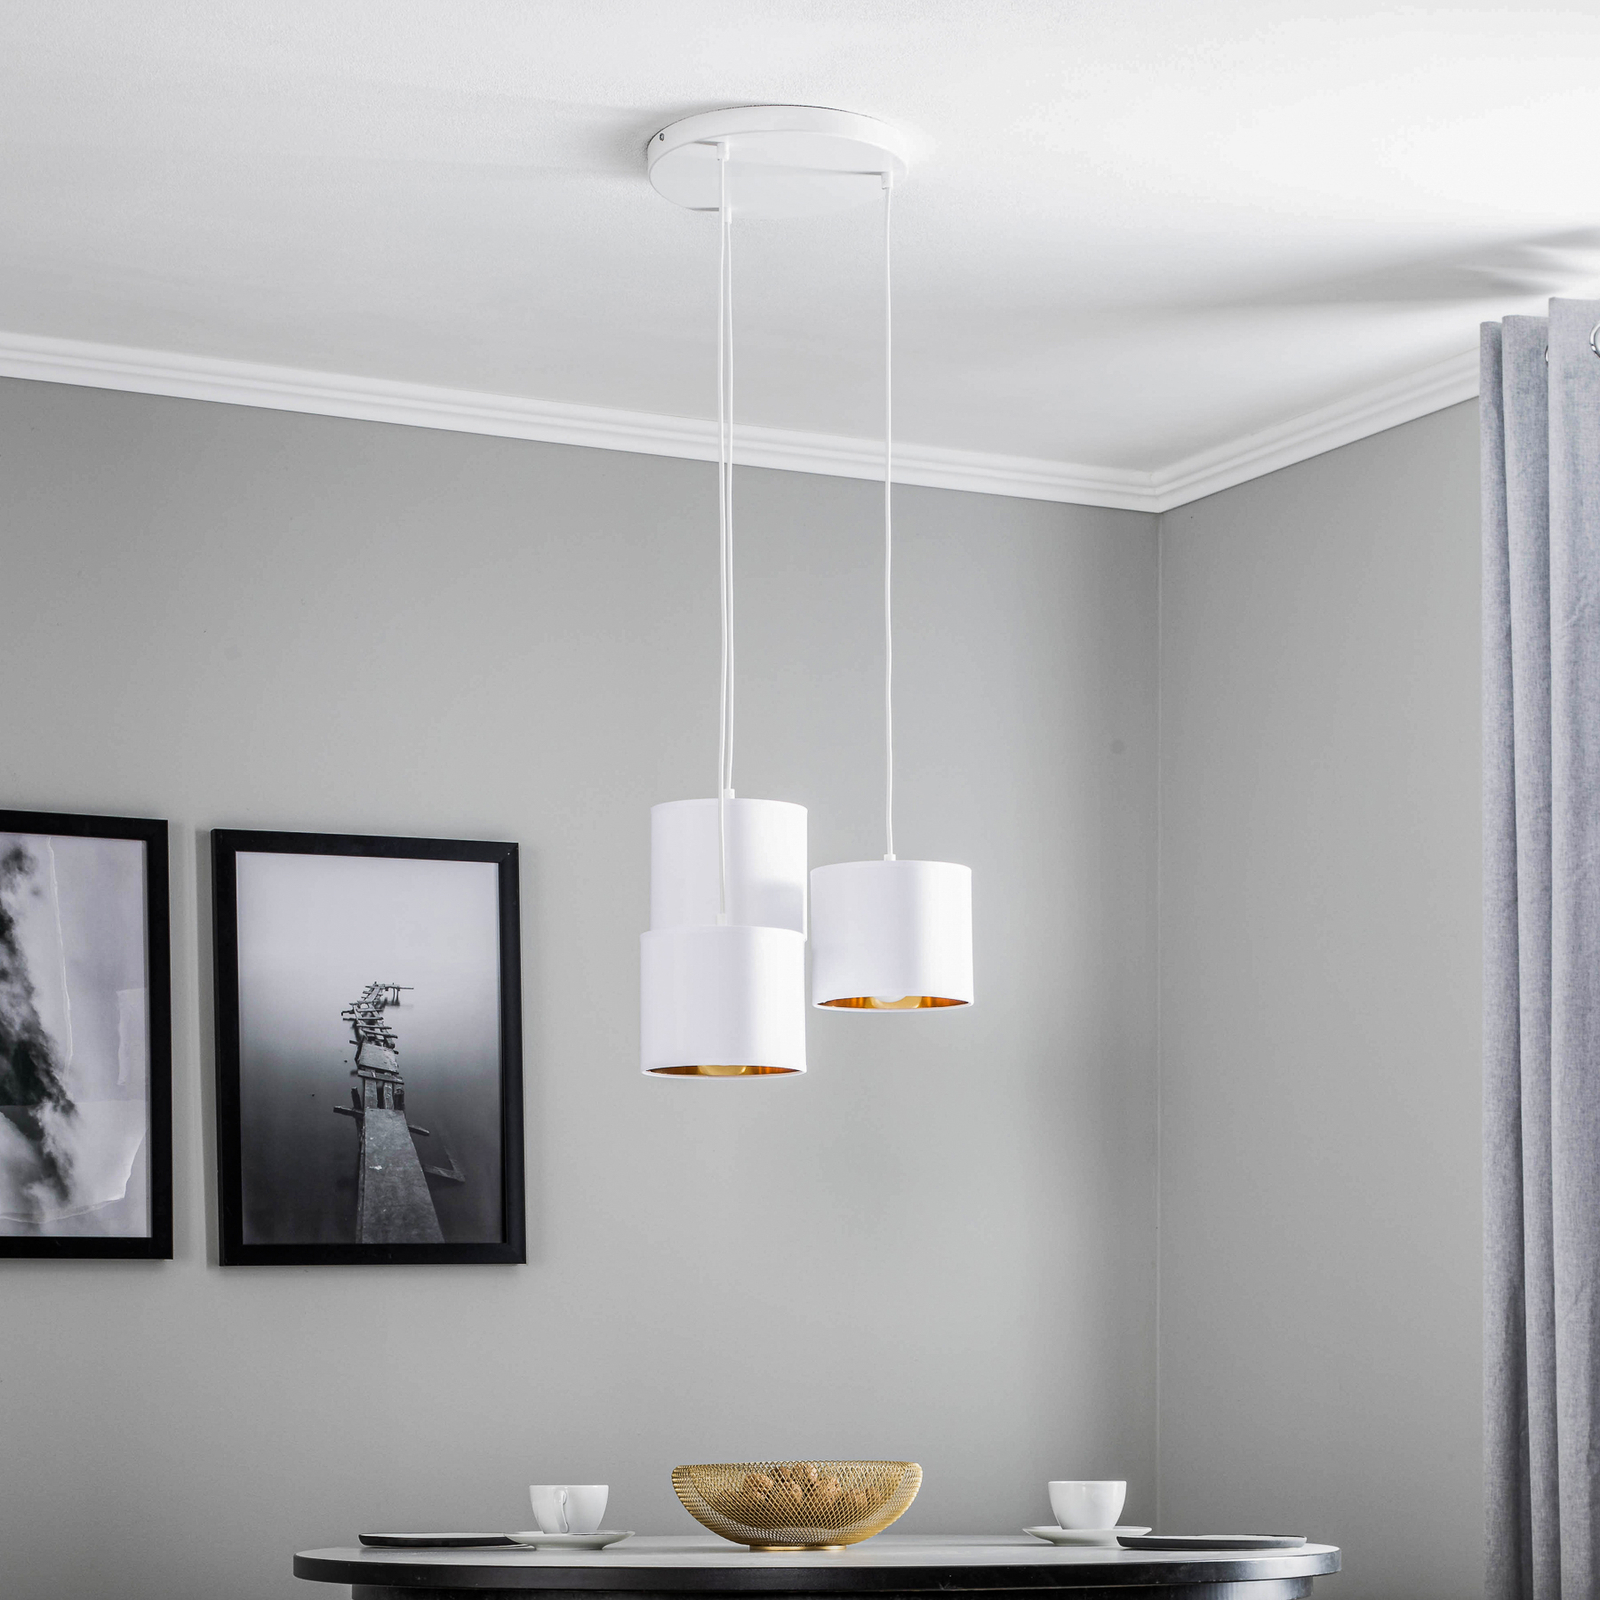 Hanglamp Soho, cilindervormig, rond 3-lamps wit/goud